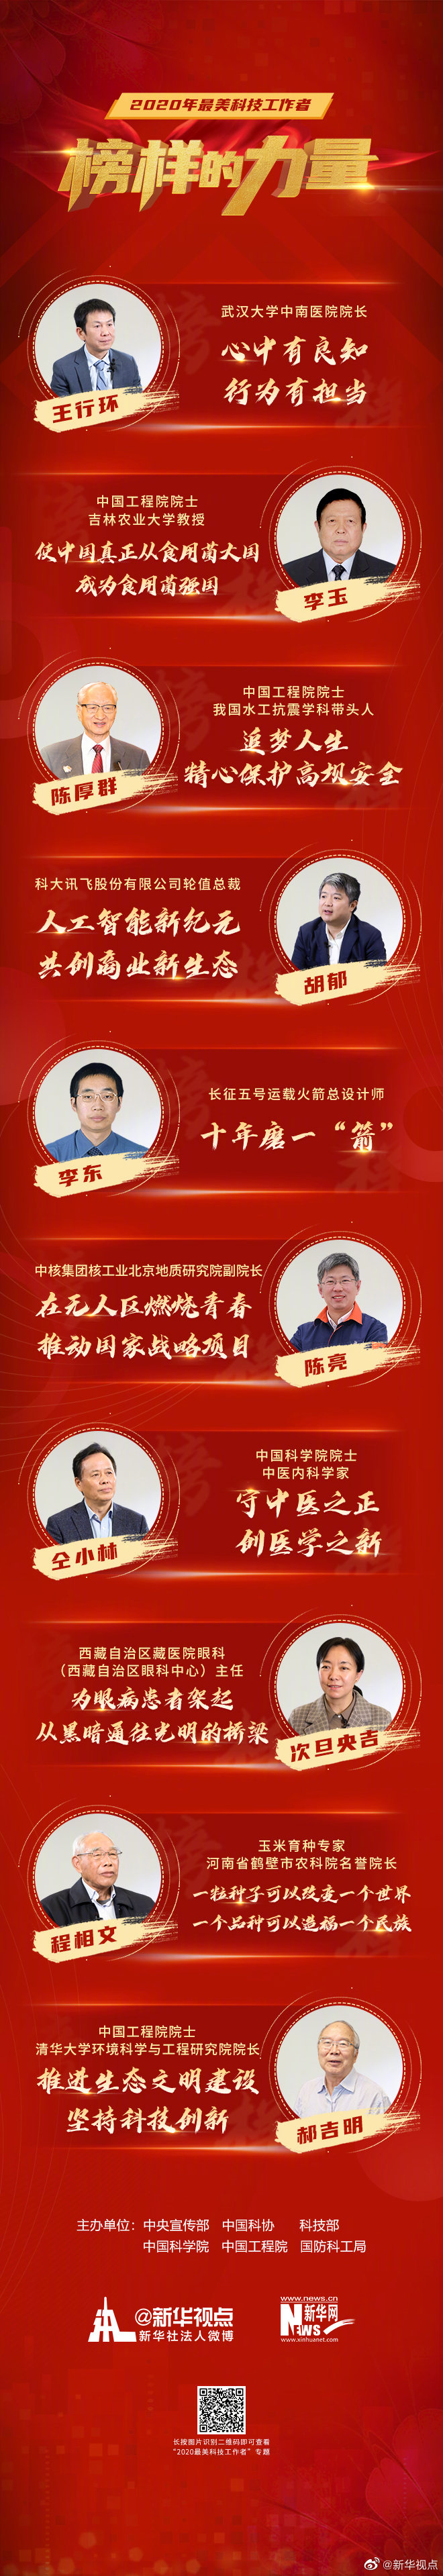 中央宣传部 中国科协等6部门发布2020年“最美科技工作者”先进事迹